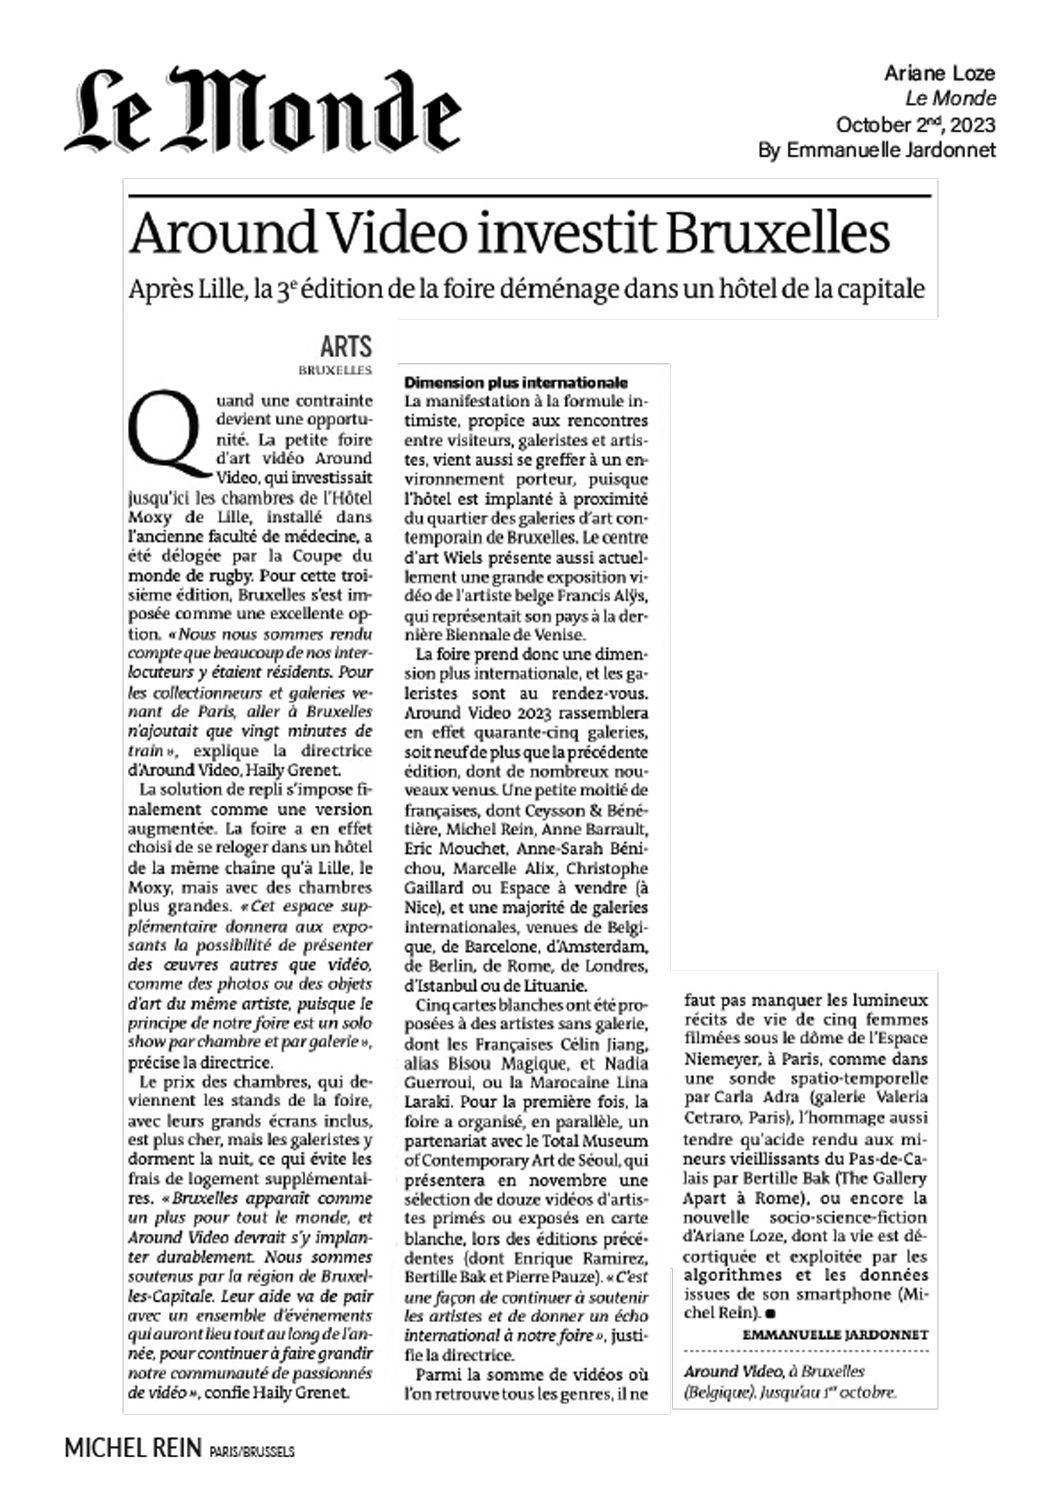 Around Video investit Bruxelles - Le Monde